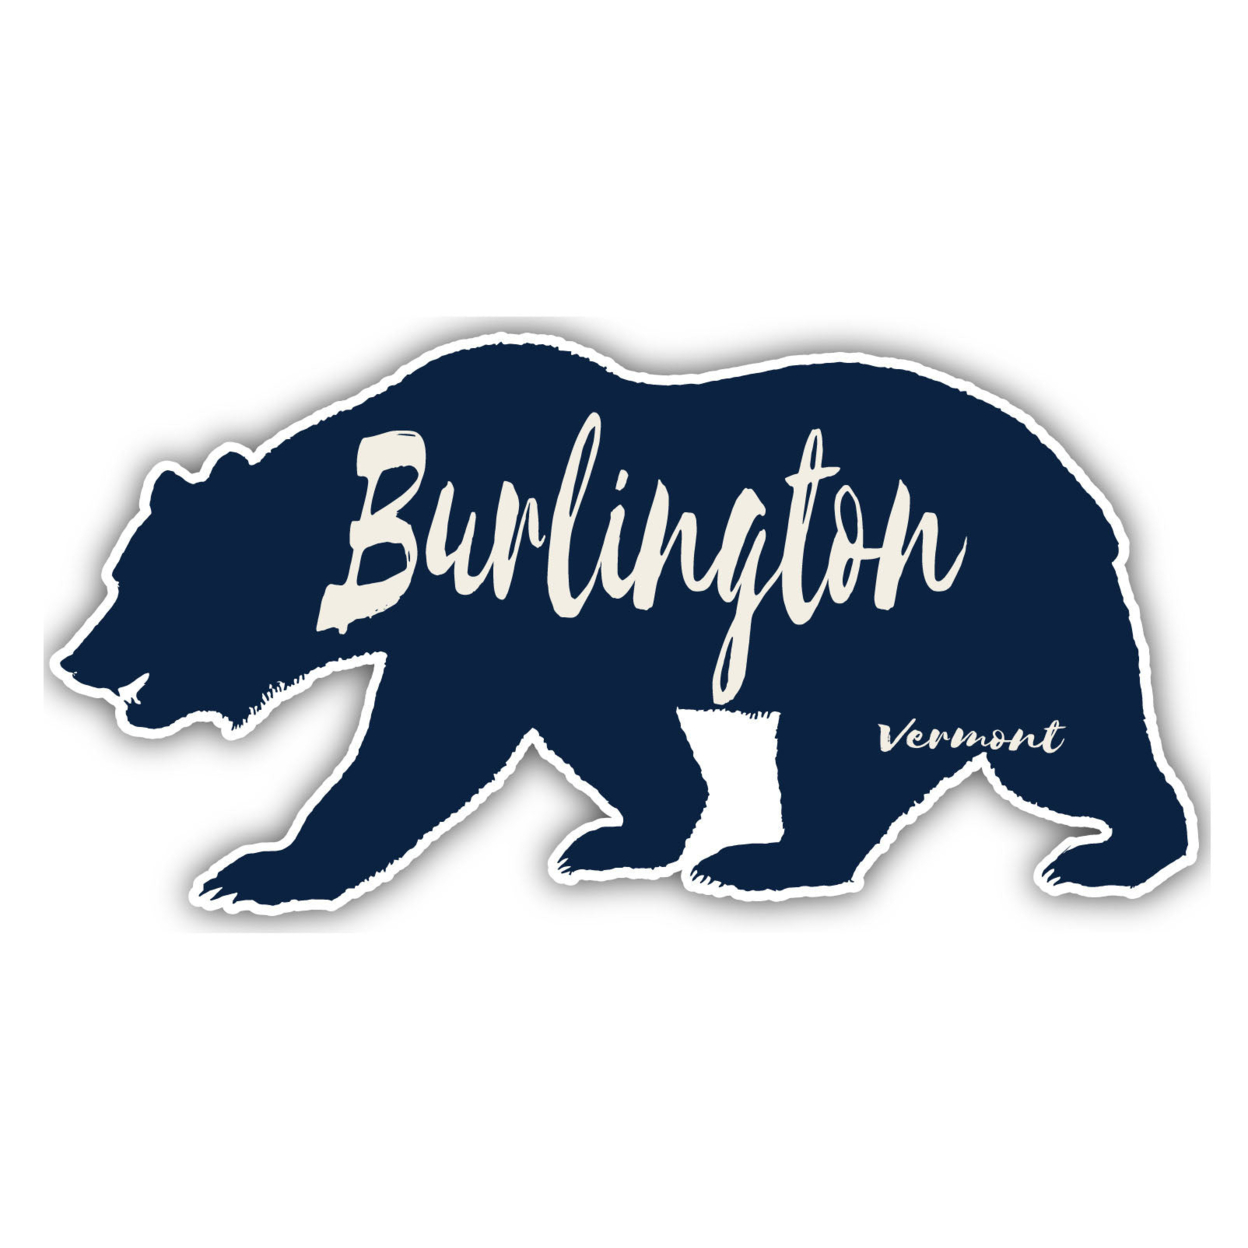 Burlington Vermont Souvenir Decorative Stickers (Choose Theme And Size) - Single Unit, 6-Inch, Adventures Awaits